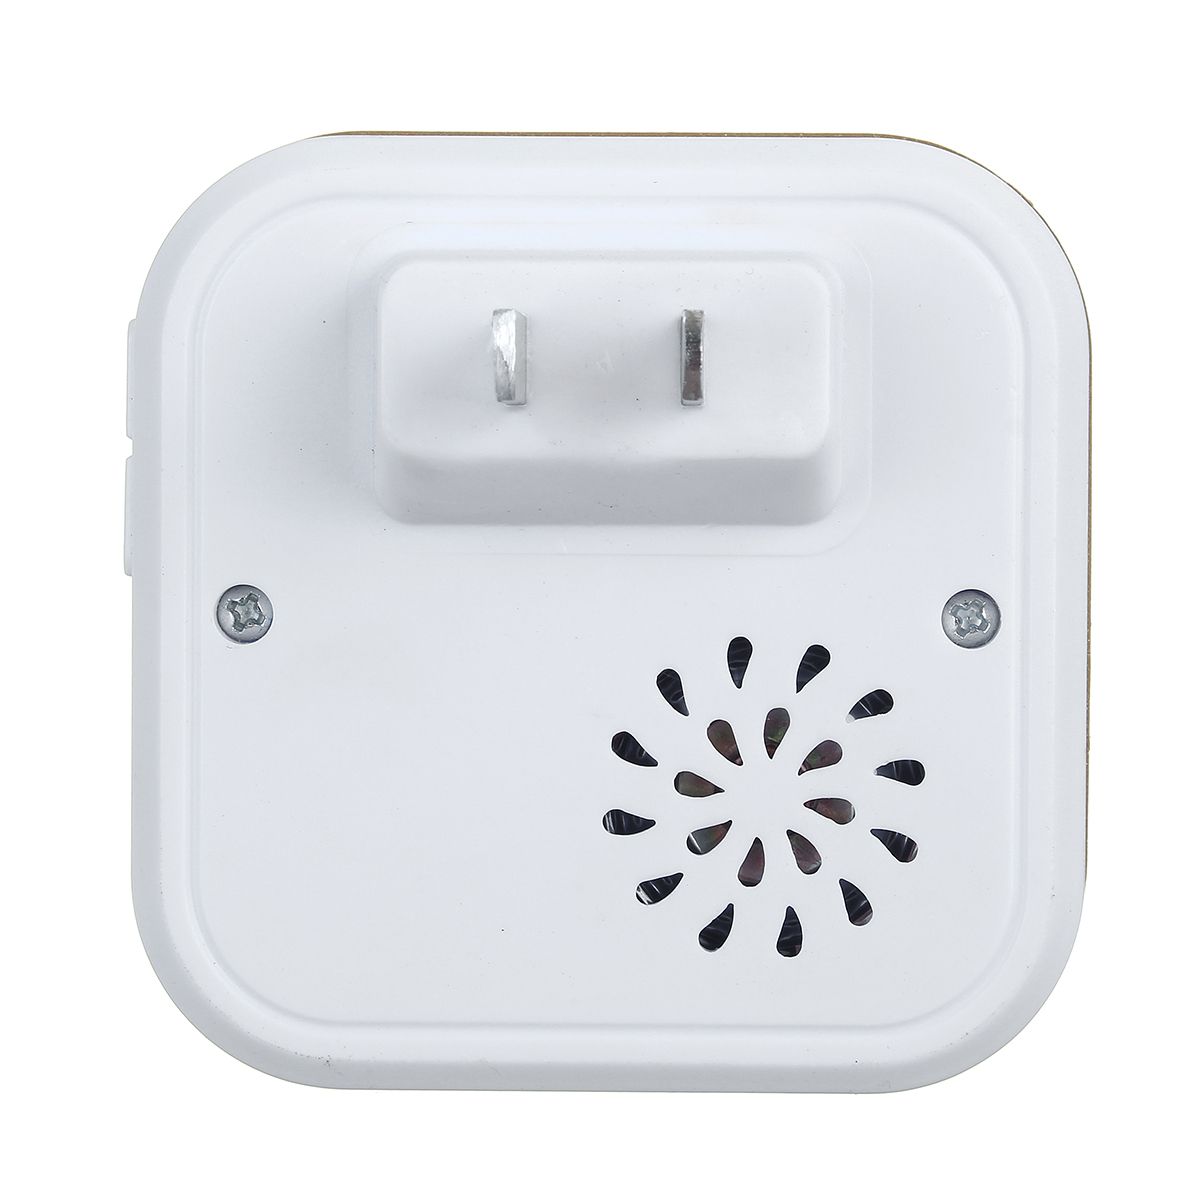 Wireless-Doorbell-Waterproof-Transmitter--Receiver-Home-Wall-Doorbell-60-Chimes-1757949